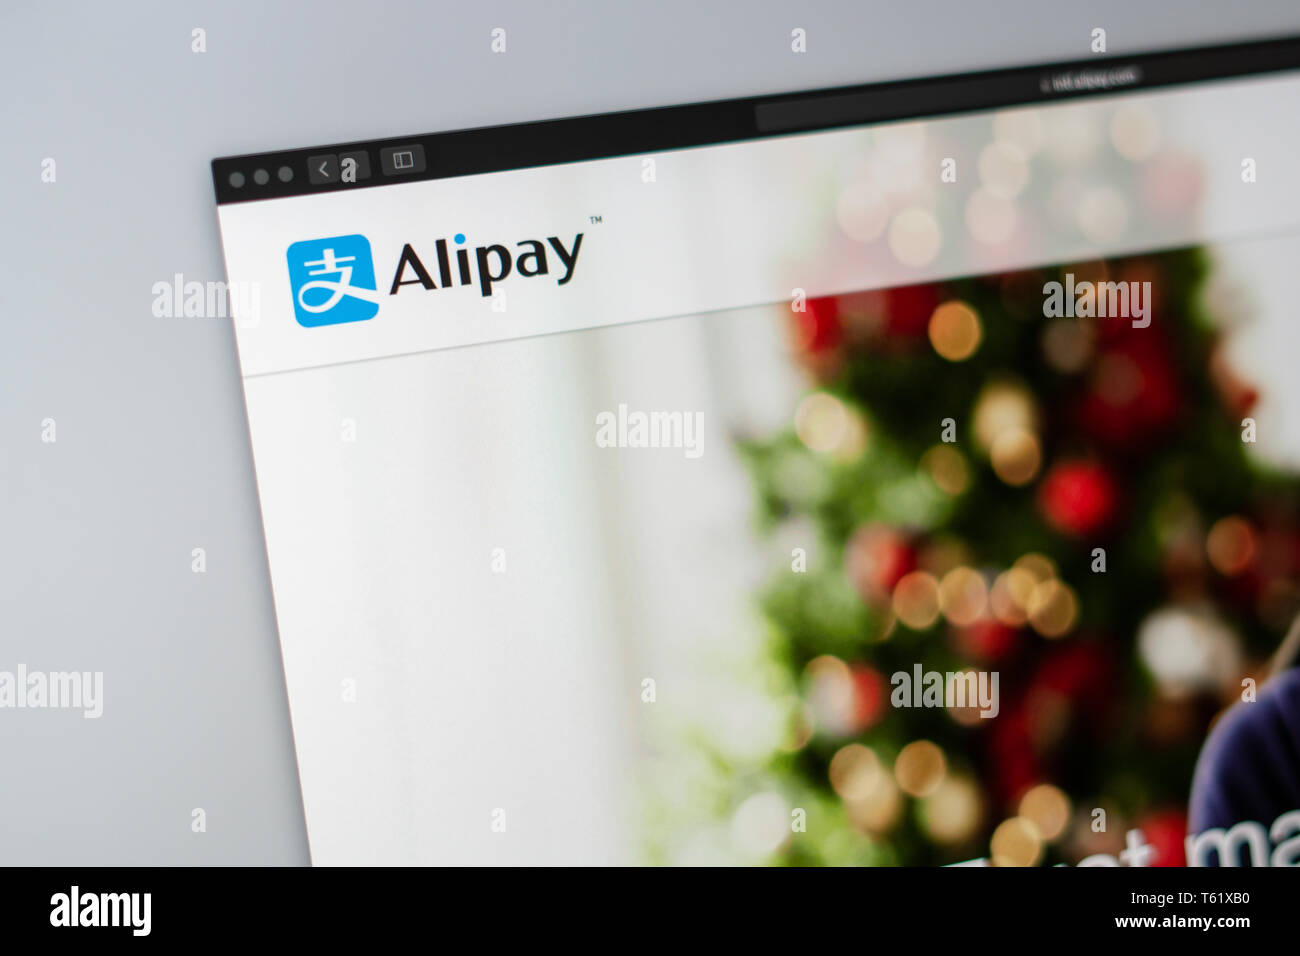 Alipay Startseite. Nahaufnahme von alipay Logo. Kann als illustrative für Medien oder anderen Websites, gut für Info oder Marketing verwendet werden. Stockfoto